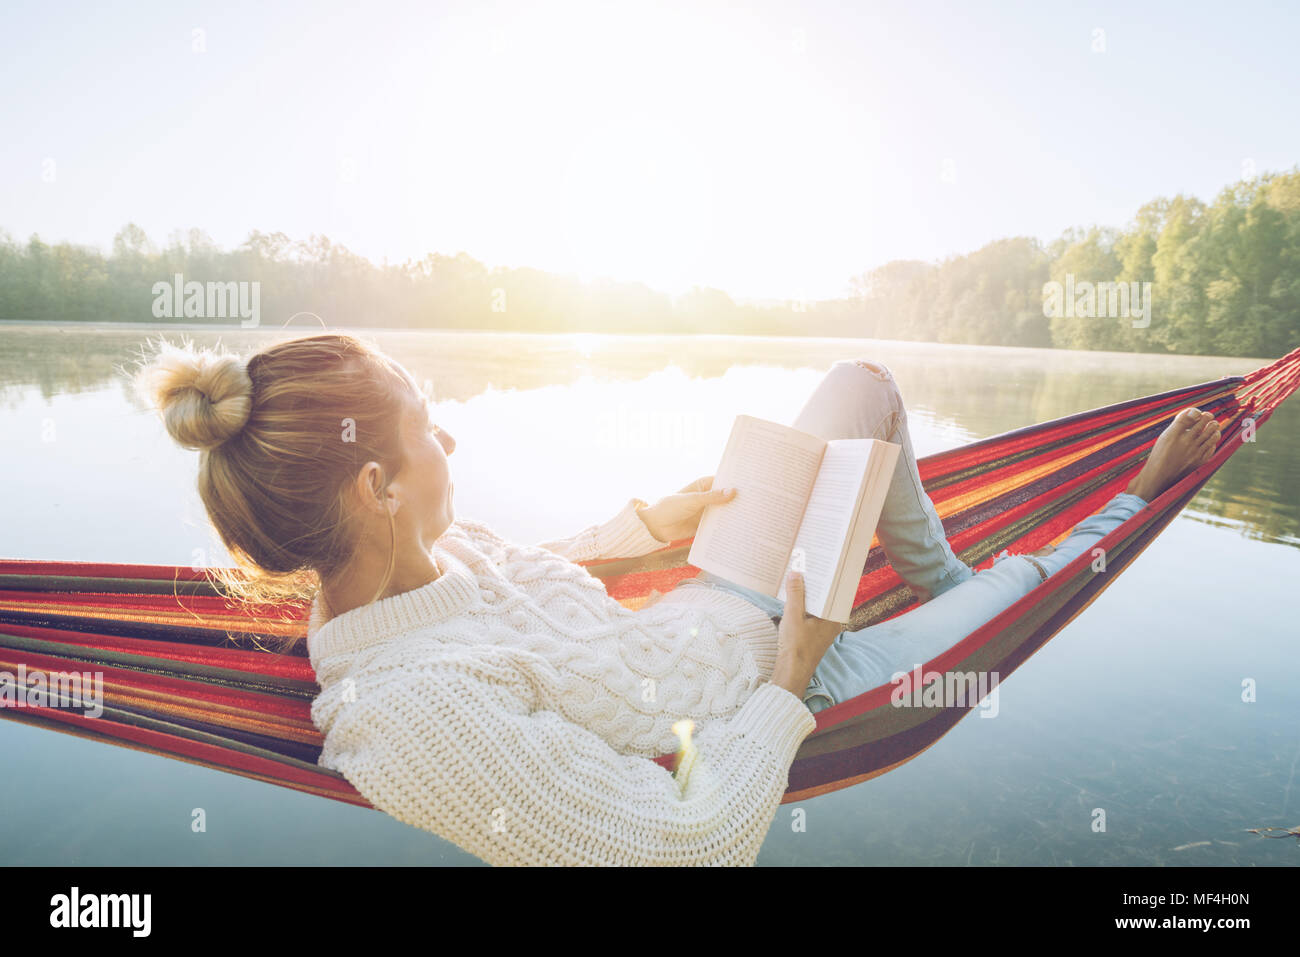 Young woman relaxing on hammock par le lac au lever du soleil, la lecture d'un livre. Les gens voyagent bien-être détente concept d'apprentissage. France, Europe Banque D'Images